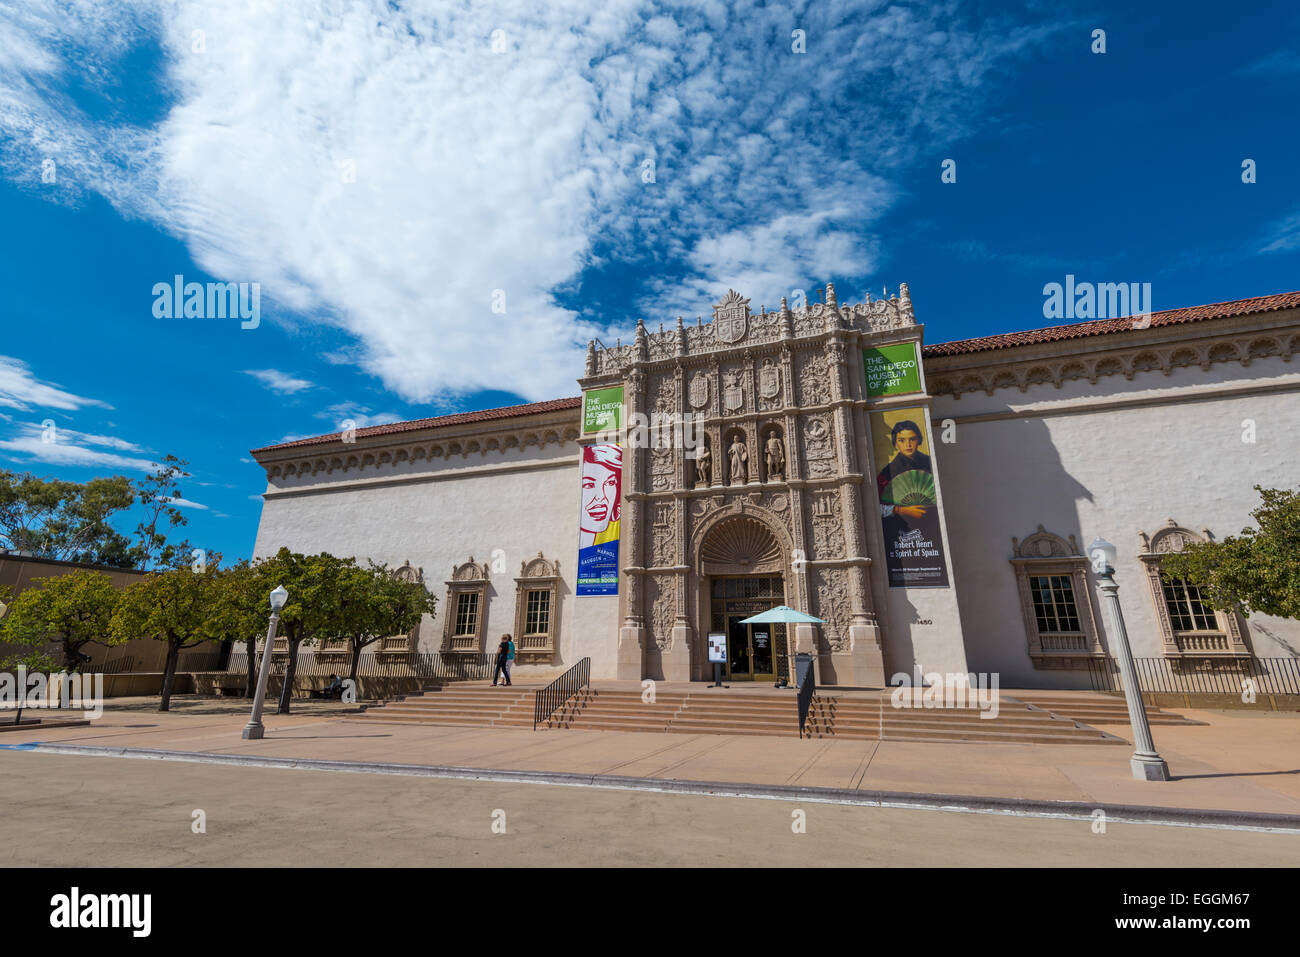 Das San Diego Museum of Art Gebäude mit Wolken über Kopf. Balboa Park, San Diego, Kalifornien, Vereinigte Staaten von Amerika. Stockfoto